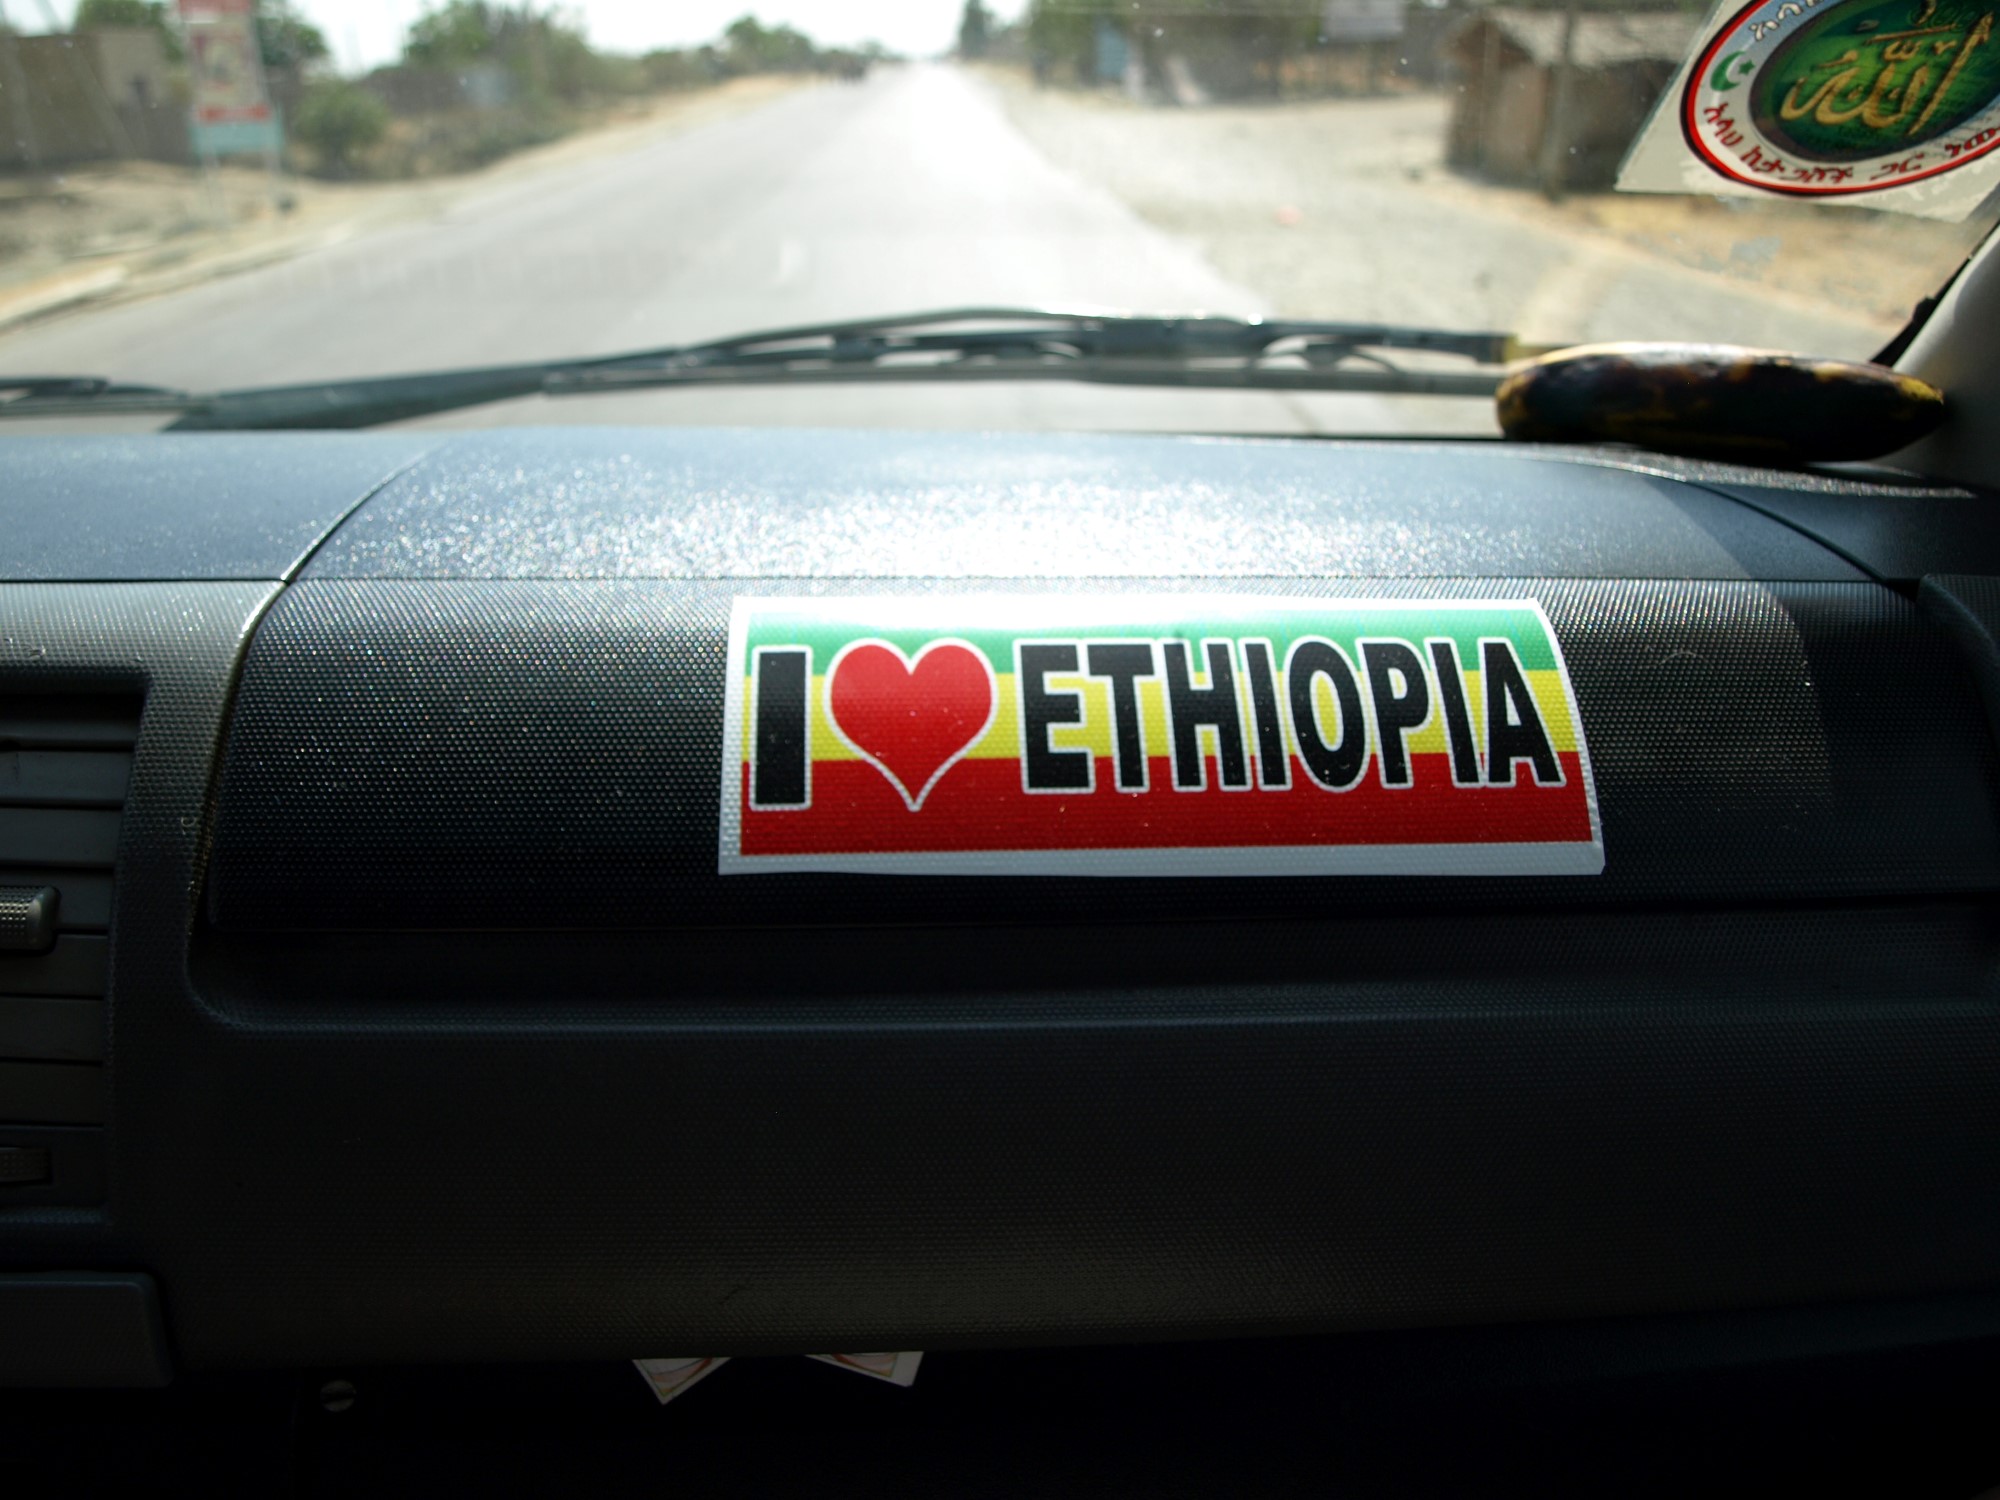 Bilde av dashbord i bil med "I love Ethiopia".